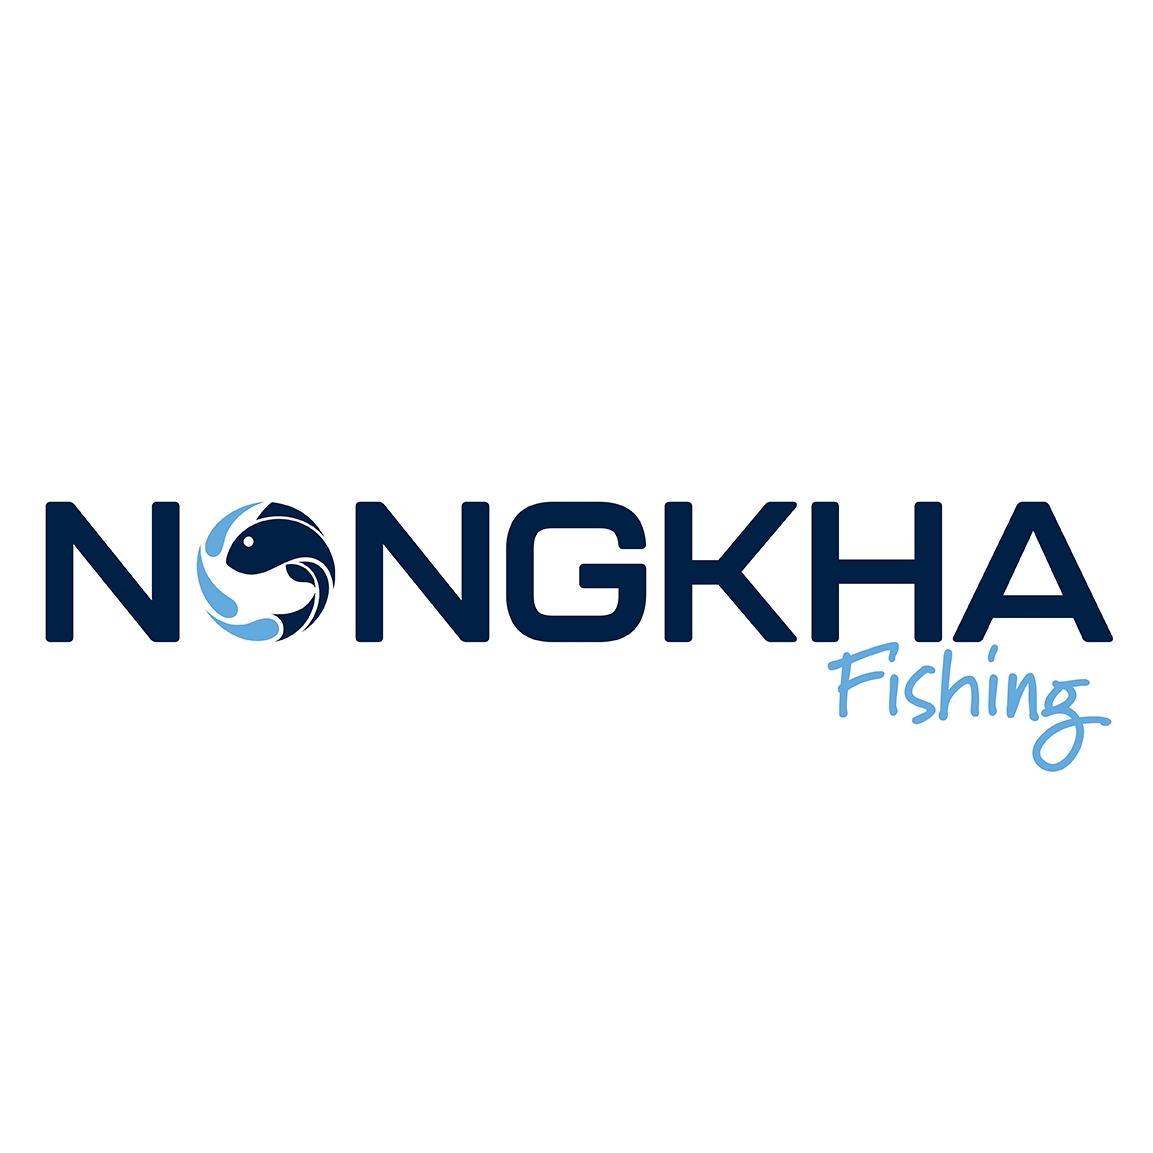 Nongkha